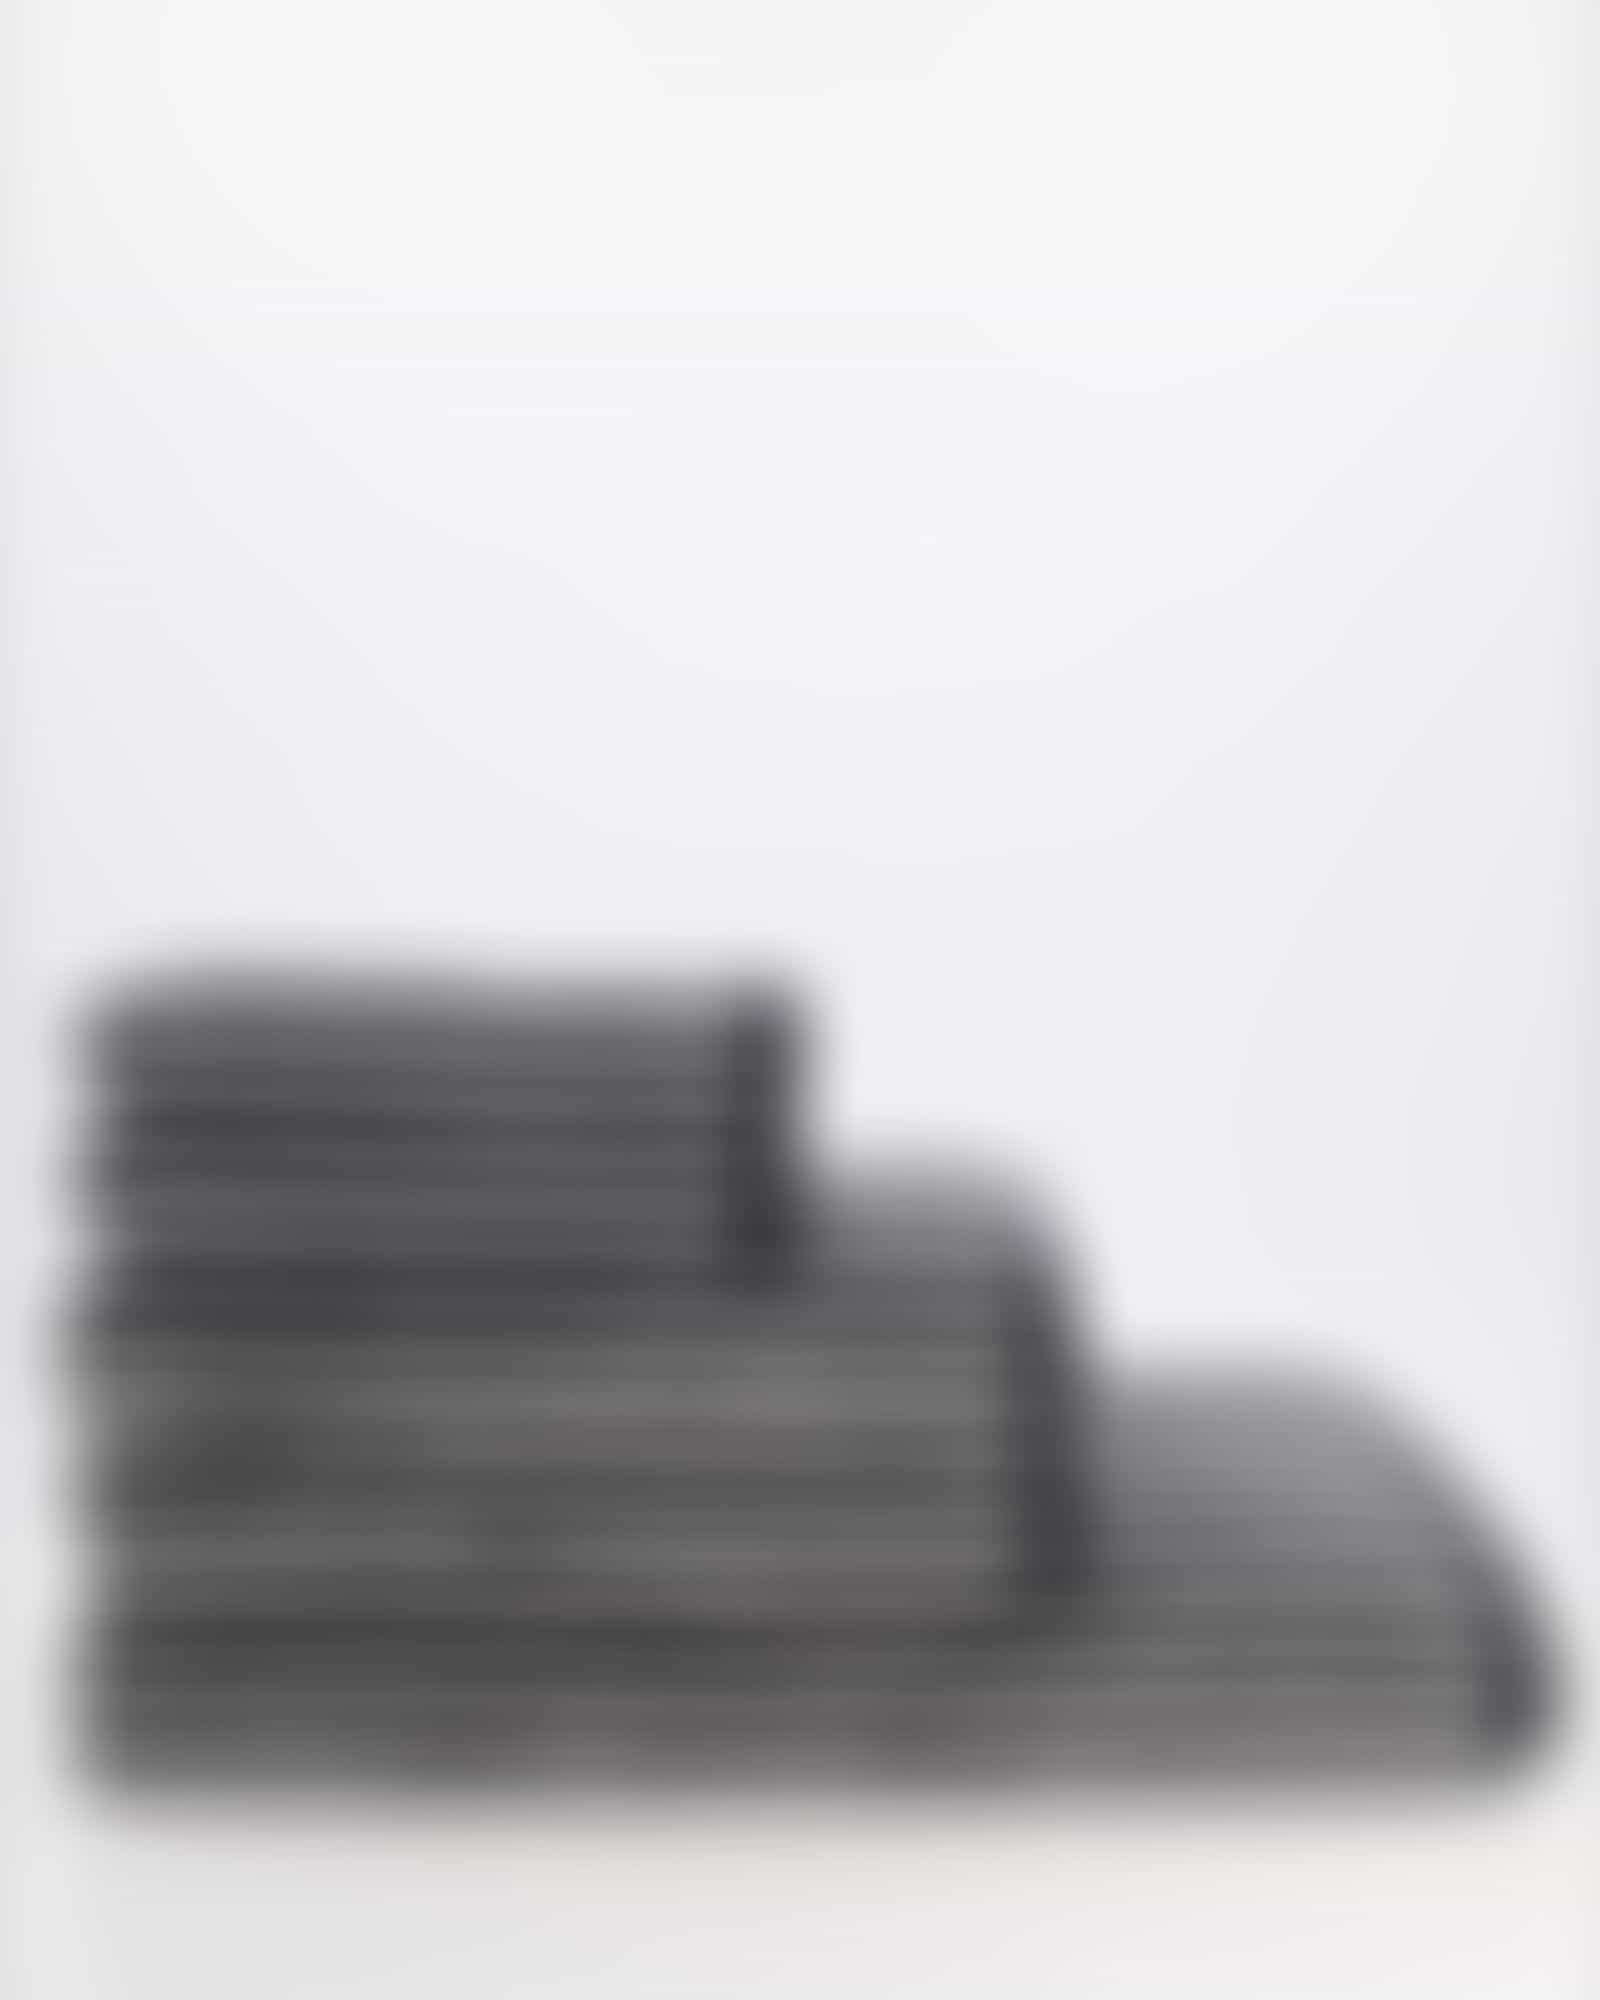 Cawö Zoom Streifen 121 - Farbe: schwarz - 97 - Duschtuch 80x150 cm